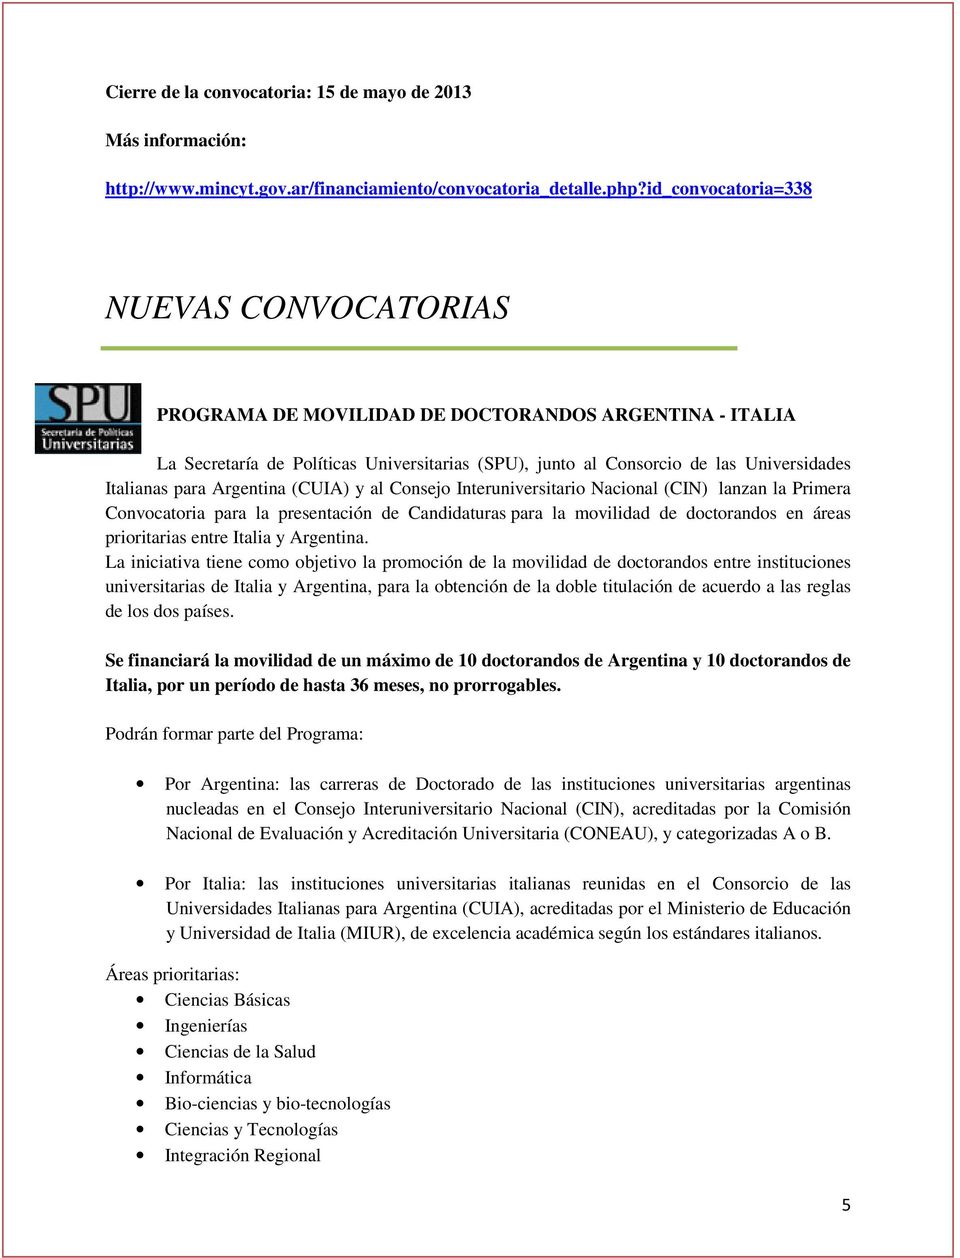 para Argentina (CUIA) y al Consejo Interuniversitario Nacional (CIN) lanzan la Primera Convocatoria para la presentación de Candidaturas para la movilidad de doctorandos en áreas prioritarias entre